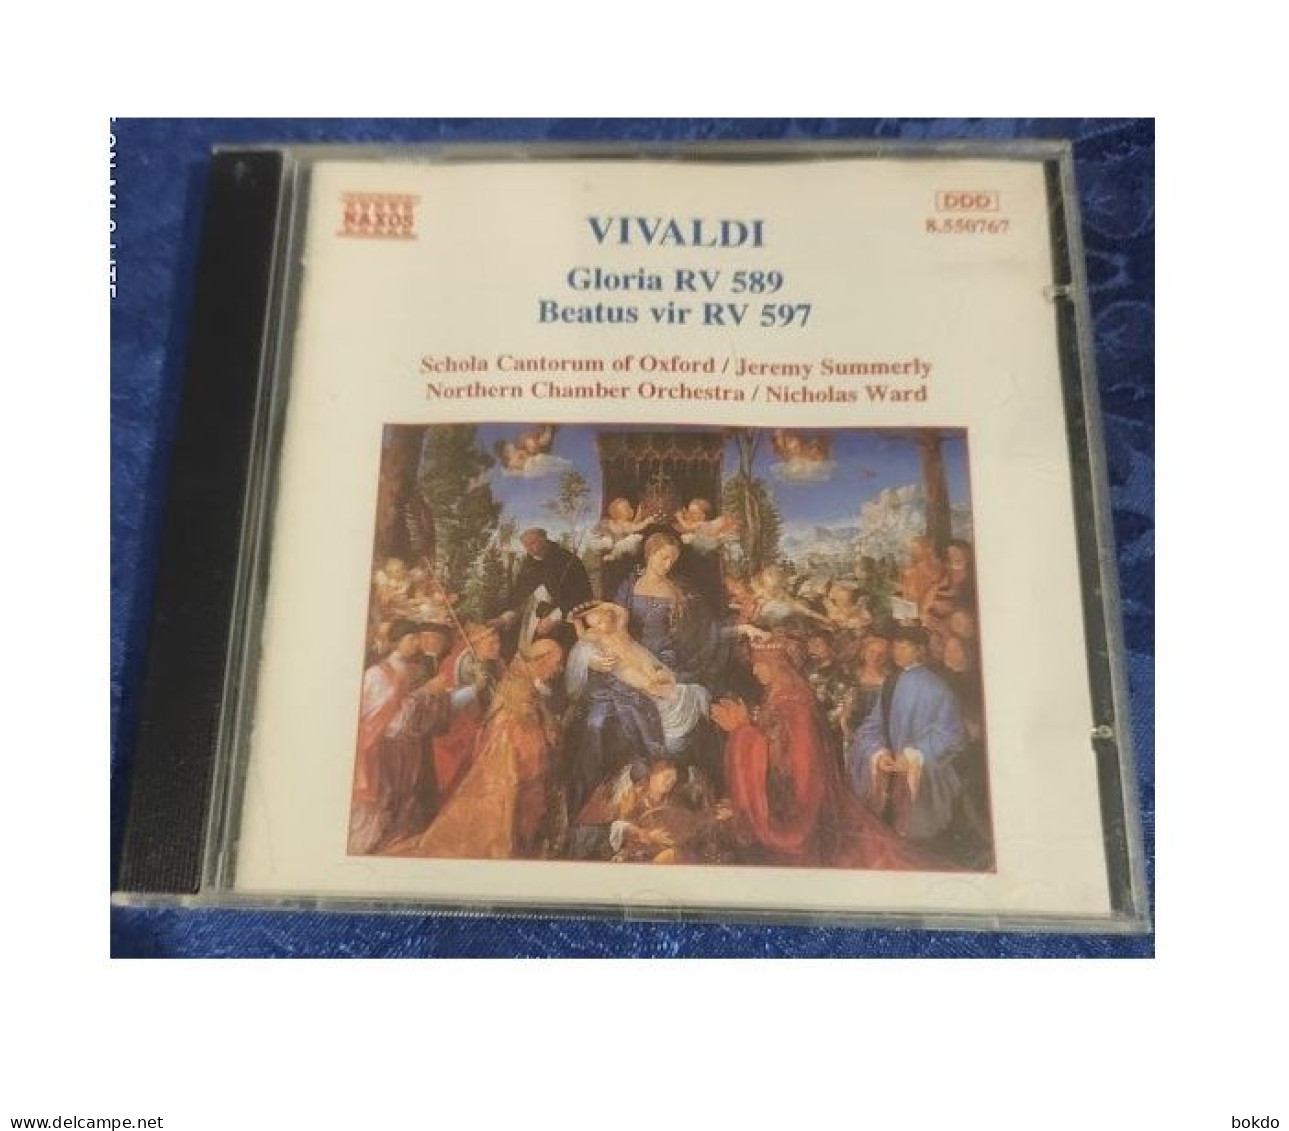 VIVALDI - Gloria RV 589 - Beatus RV 597 - Klassik